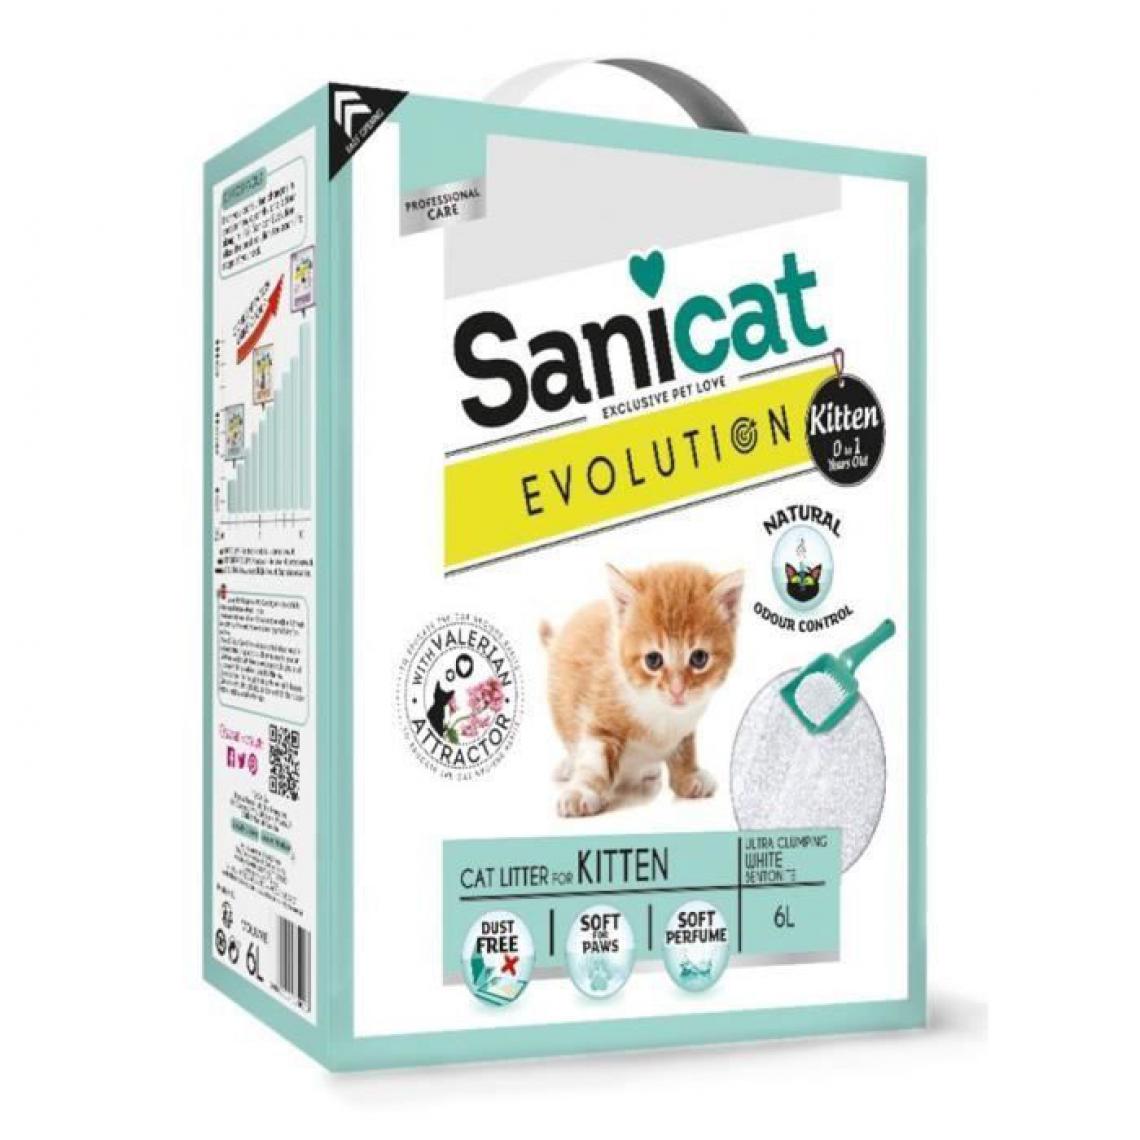 Sanicat - SANICAT Litiere Evolution Kitten 6L - Pour chaton - Litière pour chat